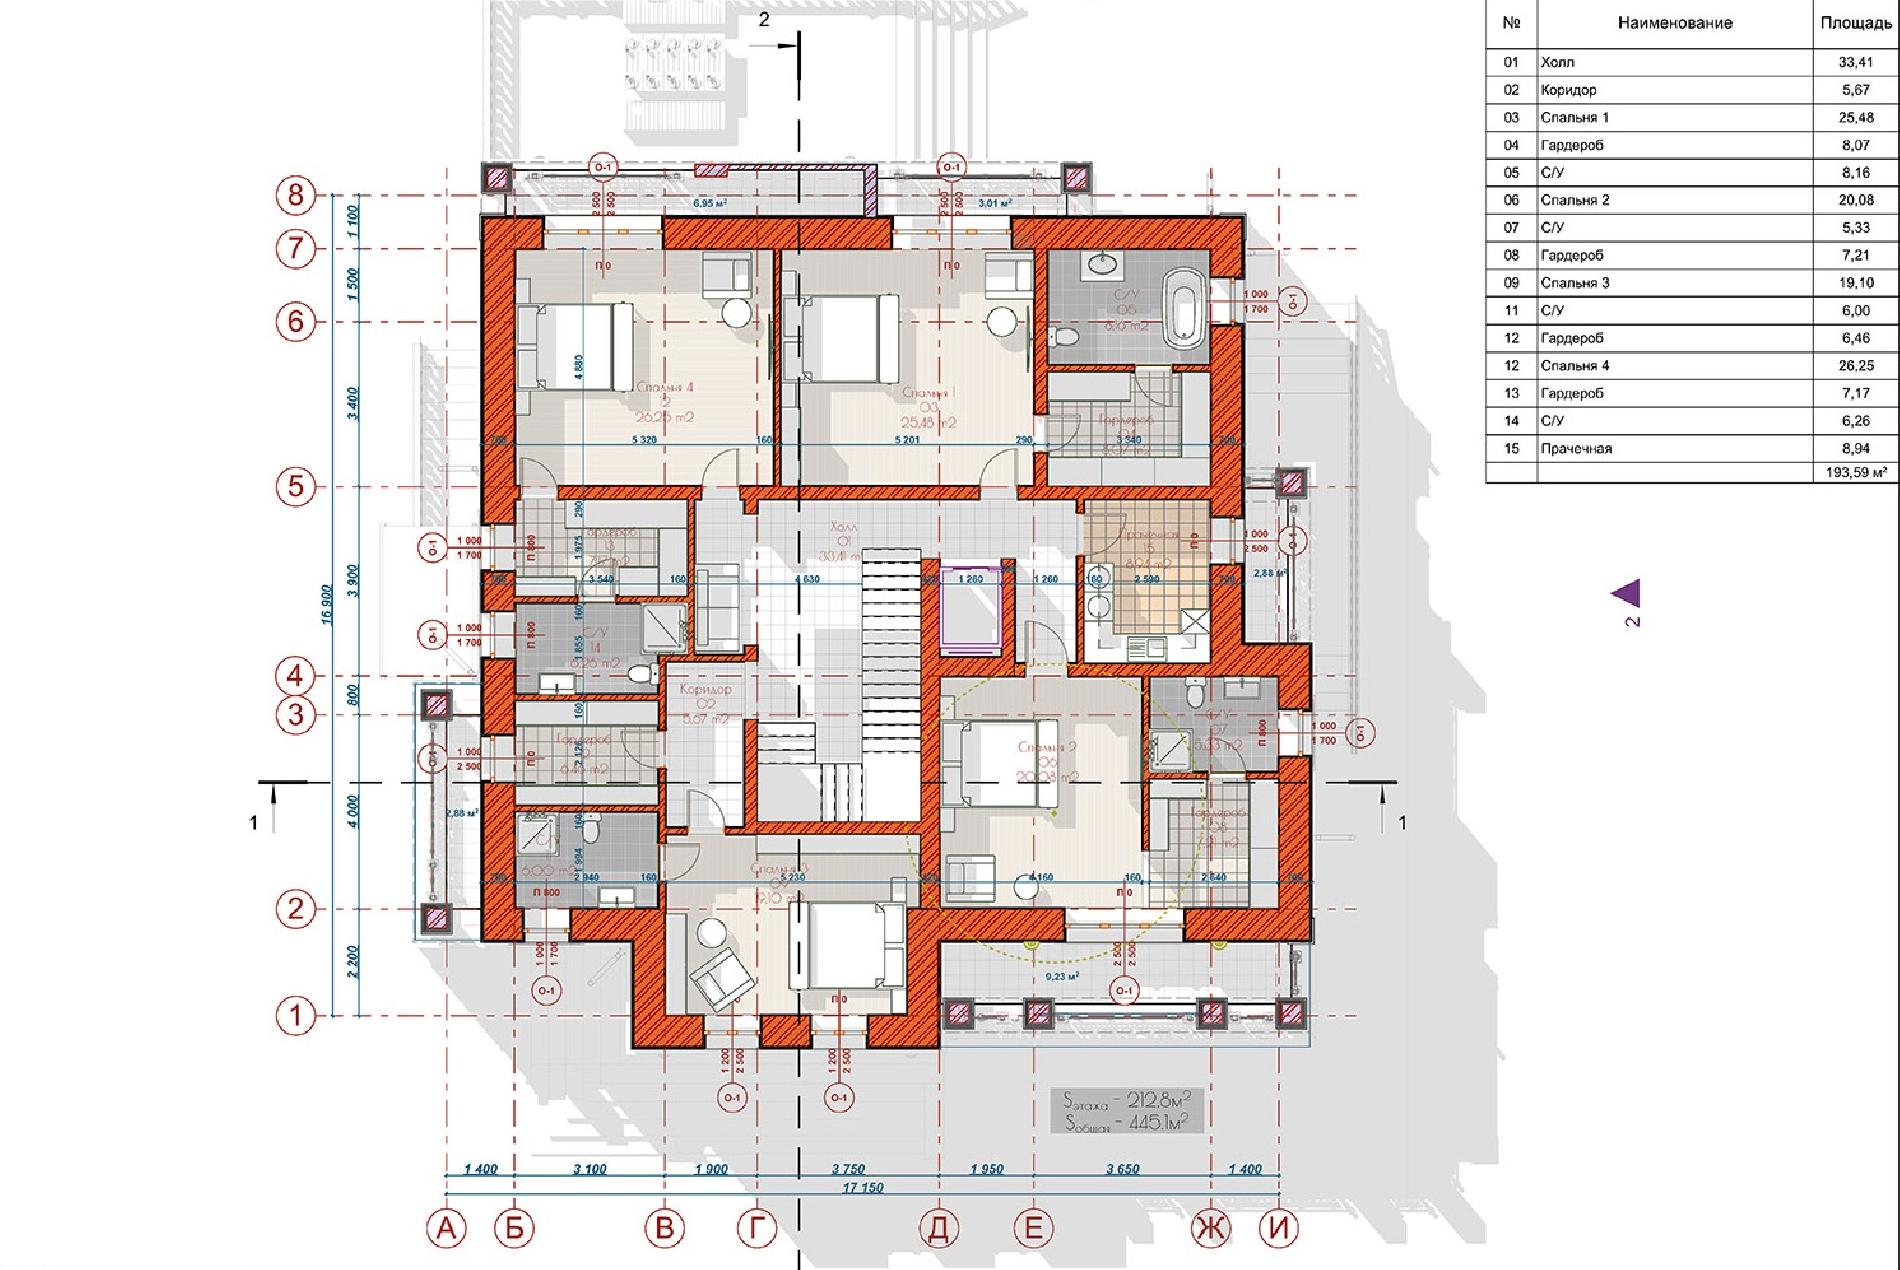 Планировка проекта дома №av-445 av-445_p2.jpg